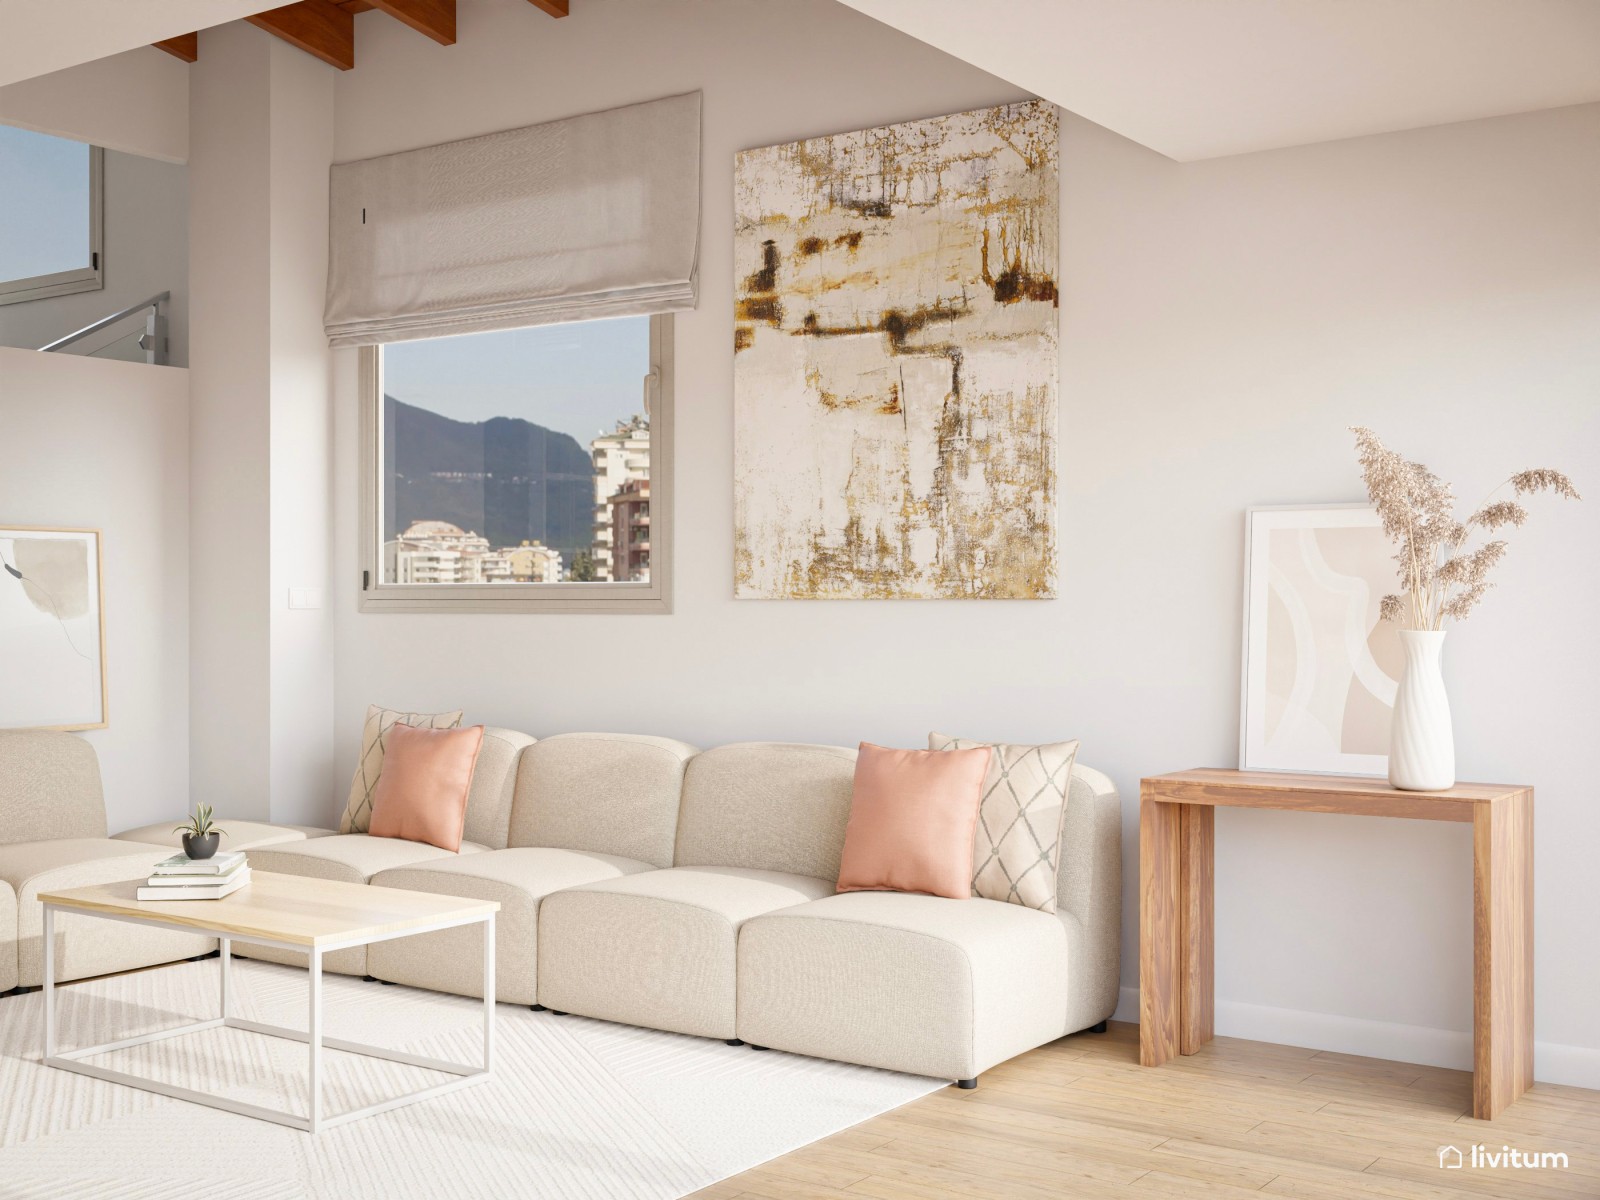 Moderno y sofisticado salón en beige, rosa y listones de madera 